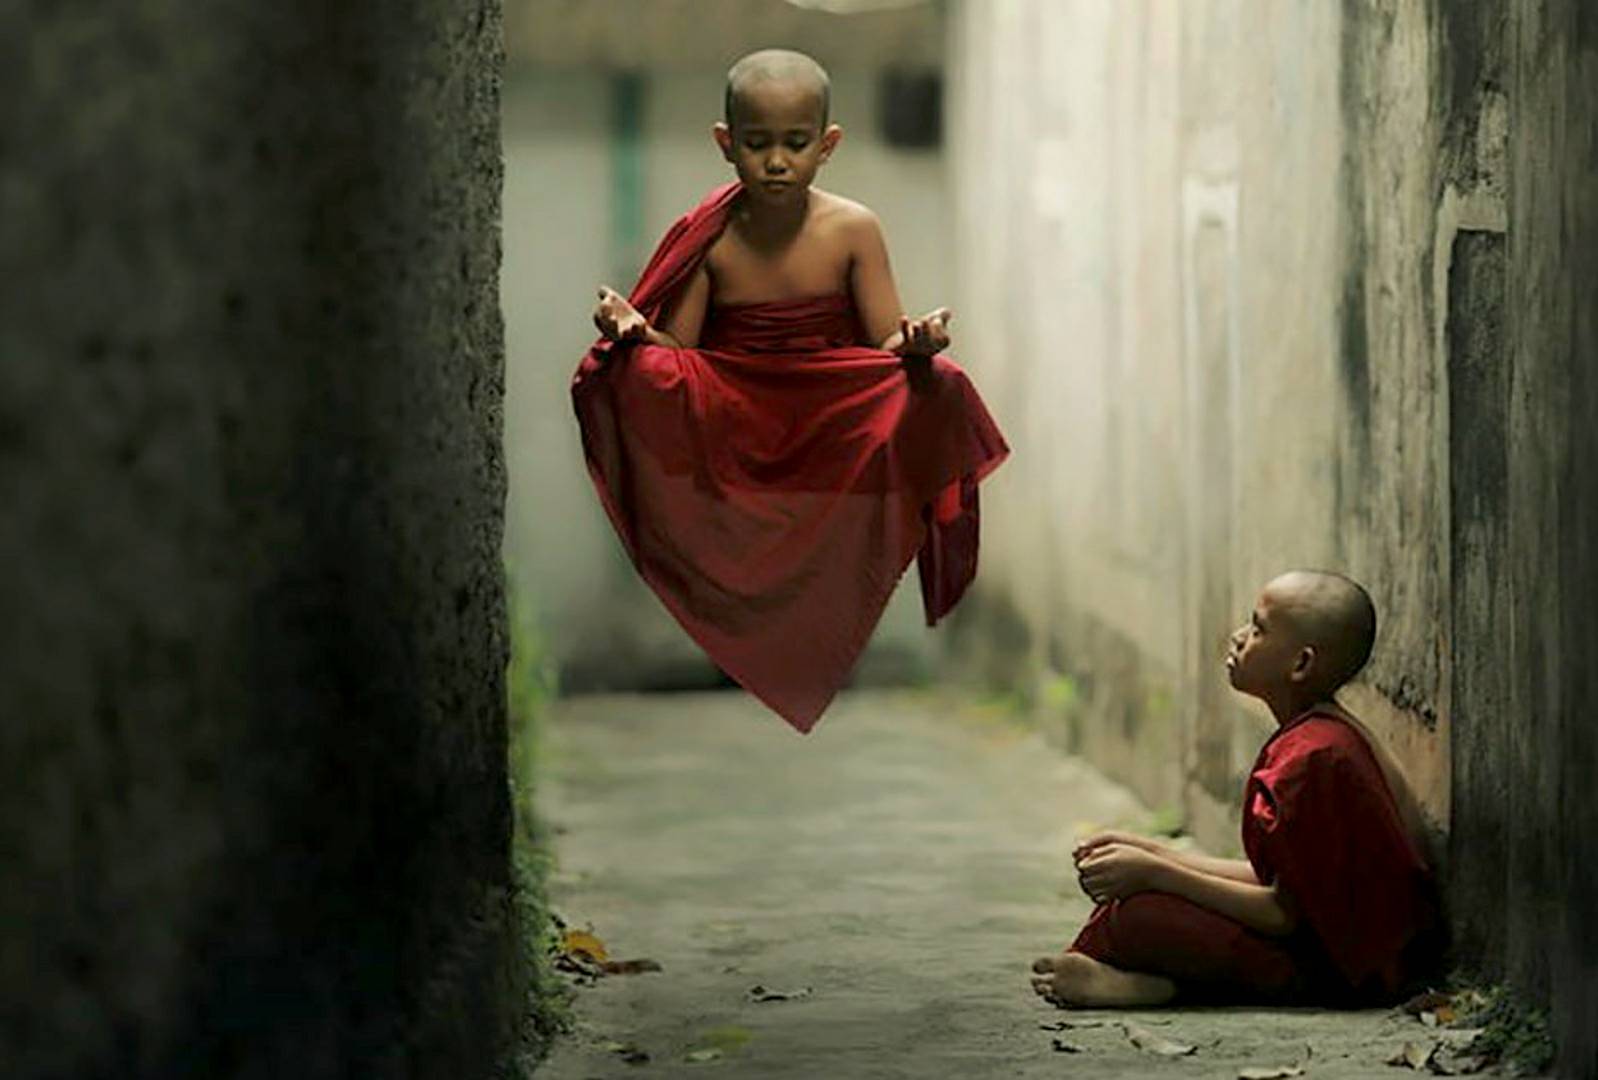 Lektirajoči menih